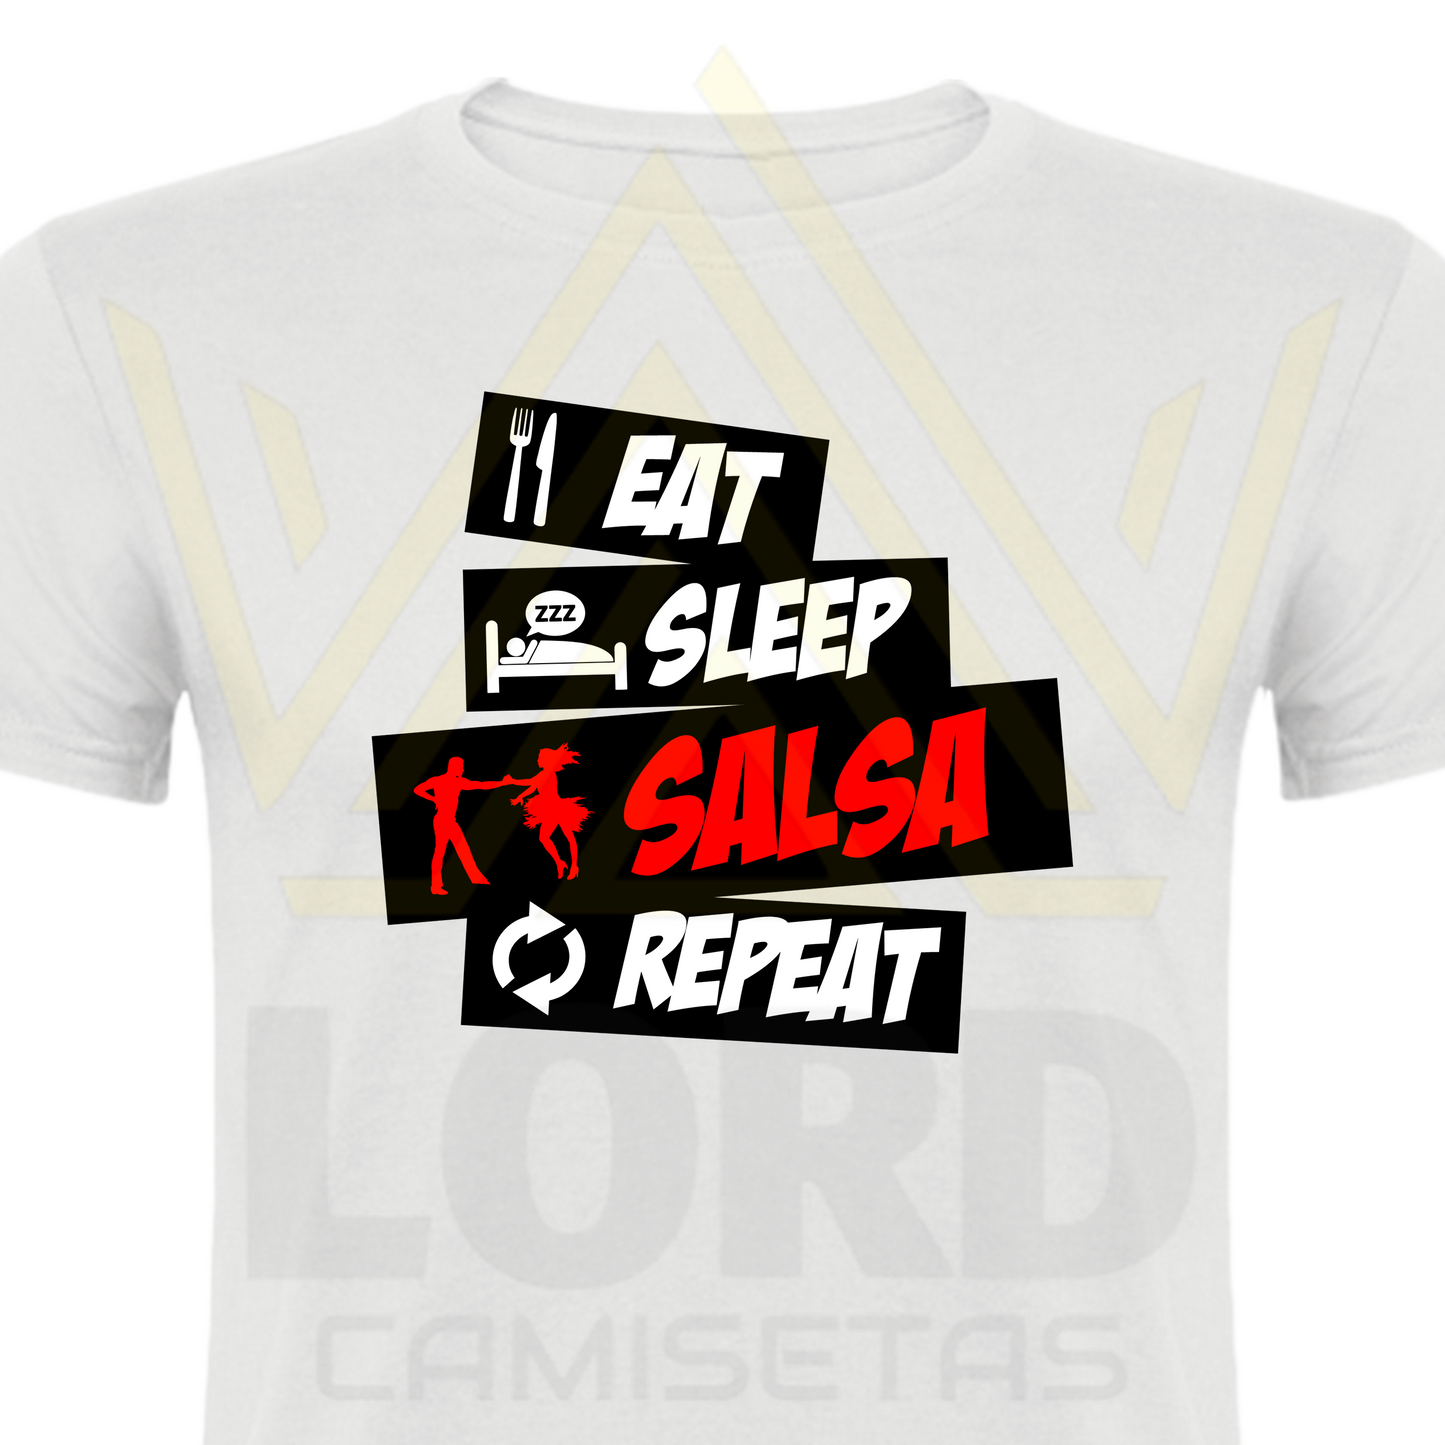 Camiseta Eat Sleep Slasa & Repeat